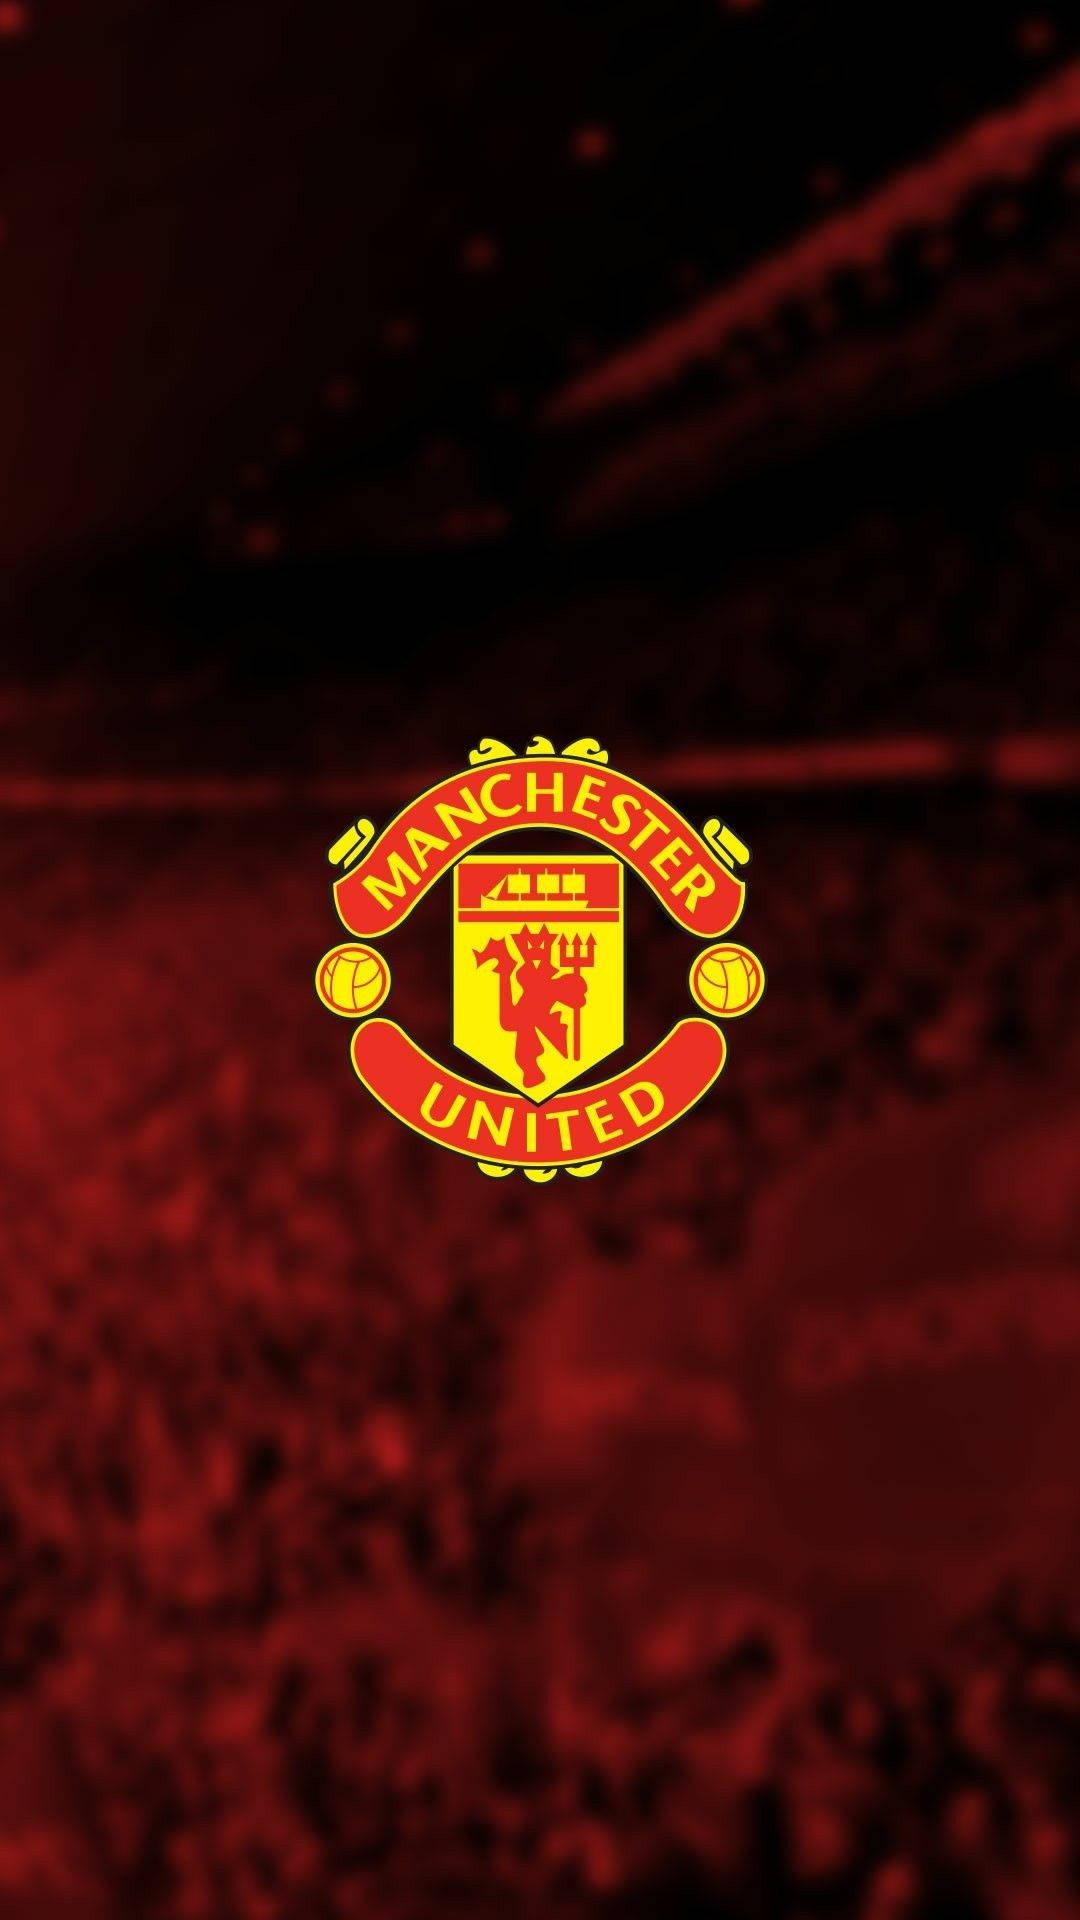 Manchester United Logo With Stadium Background